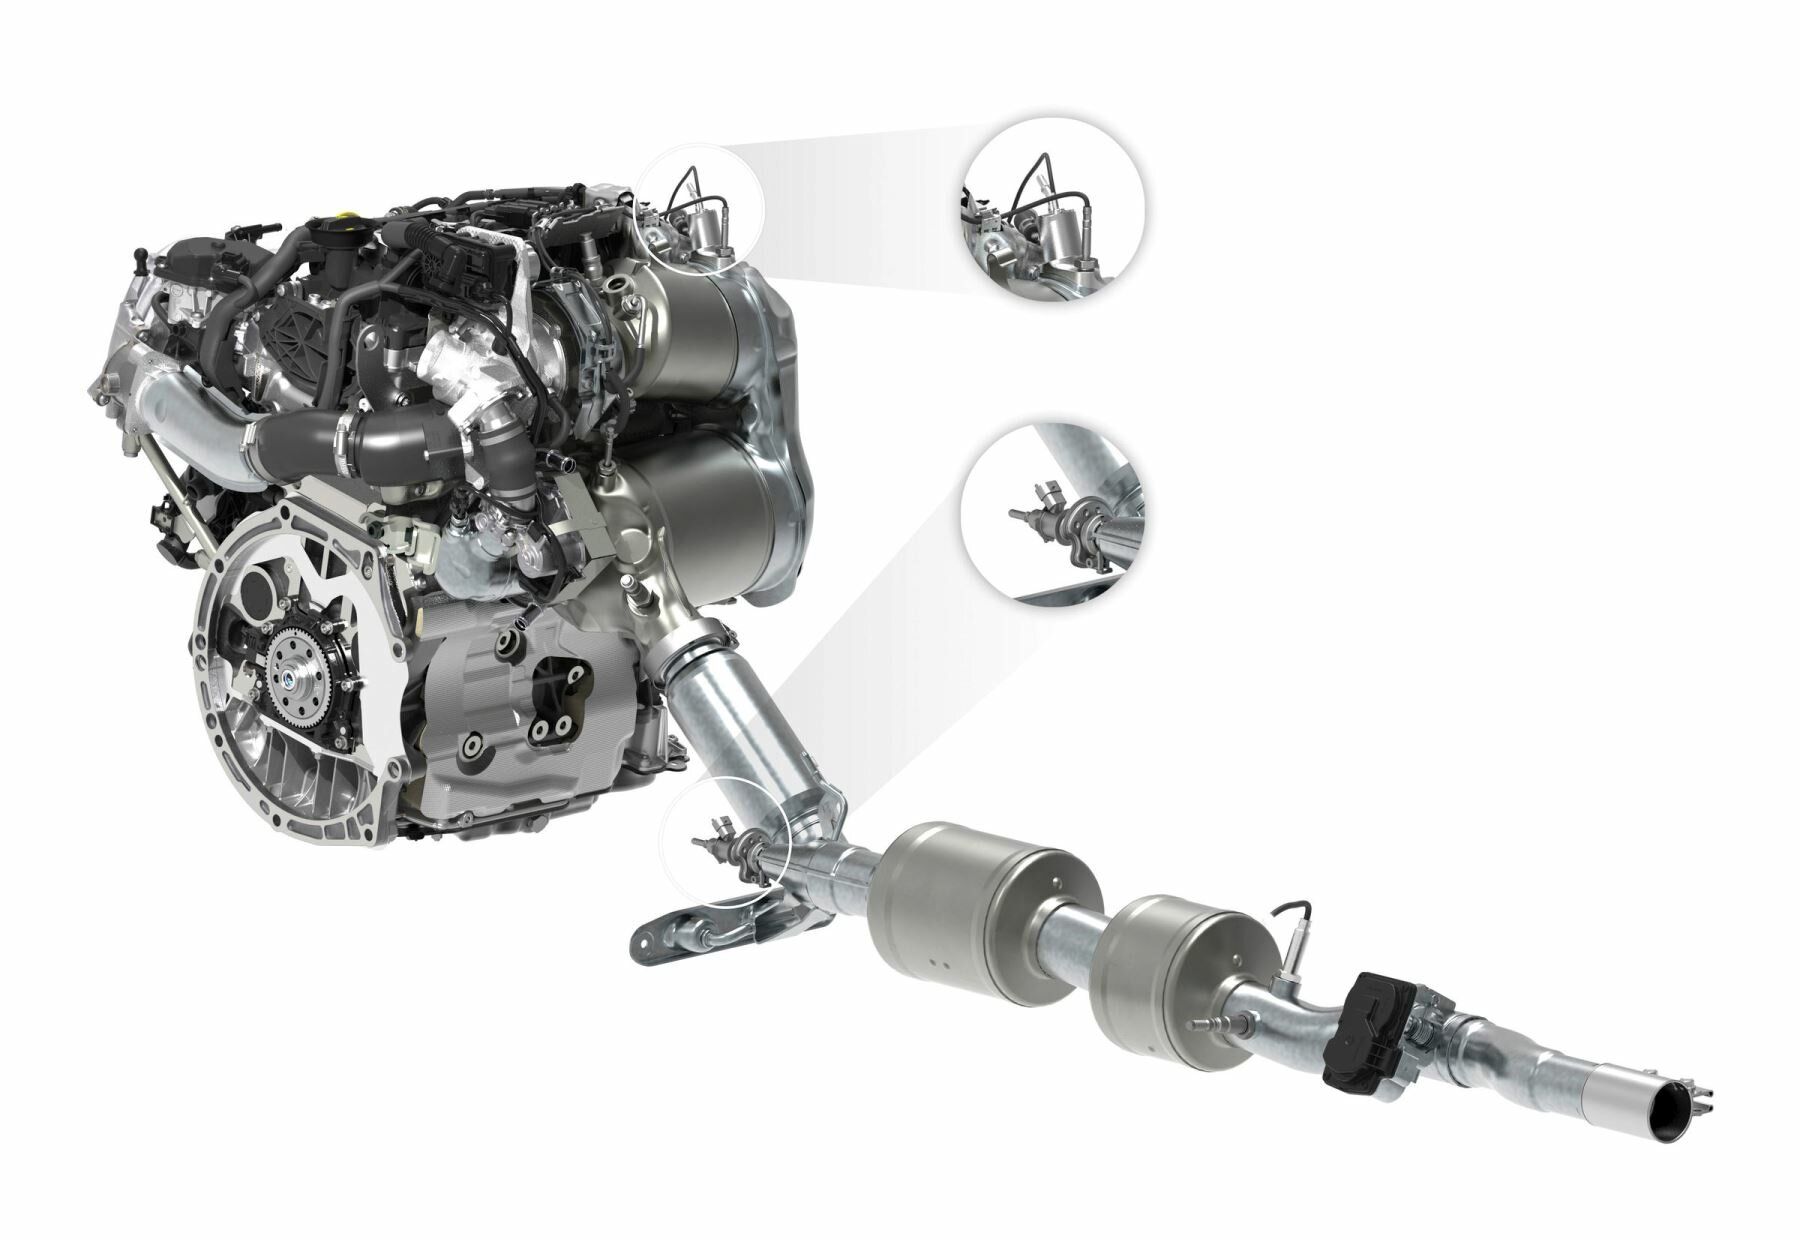 Nejdůležitější vznětový motor značky Volkswagen 2.0 TDI splňuje i Euro 6d